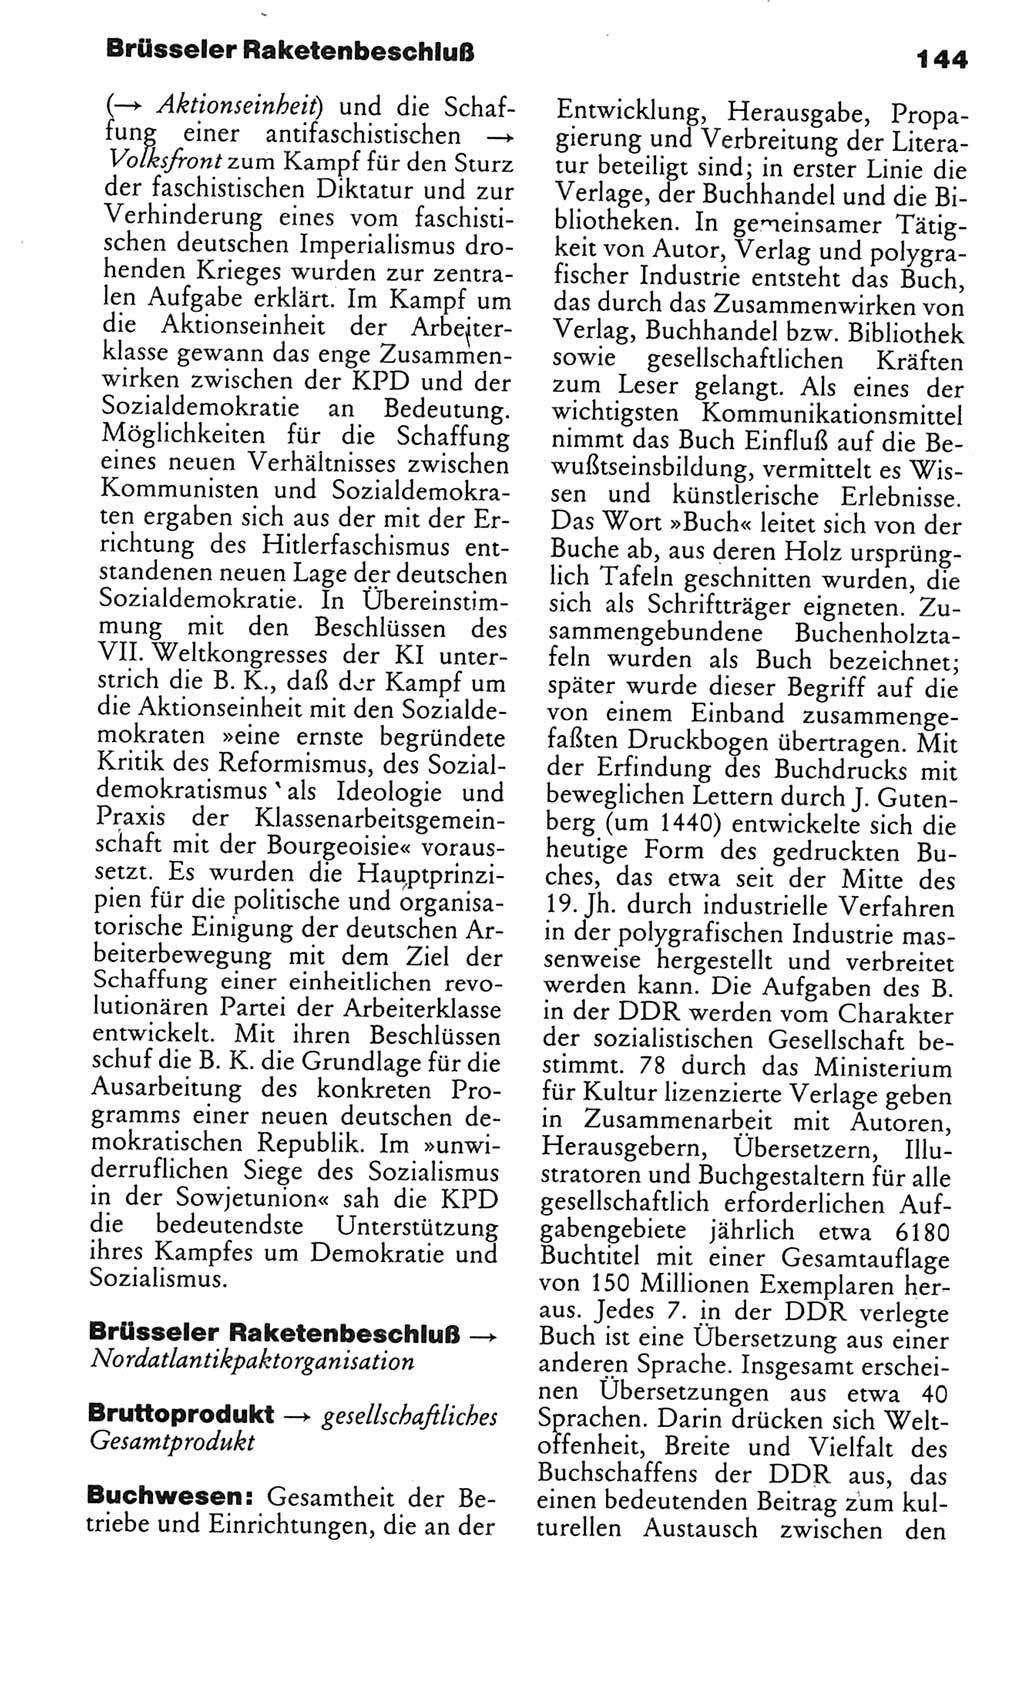 Kleines politisches Wörterbuch [Deutsche Demokratische Republik (DDR)] 1983, Seite 144 (Kl. pol. Wb. DDR 1983, S. 144)